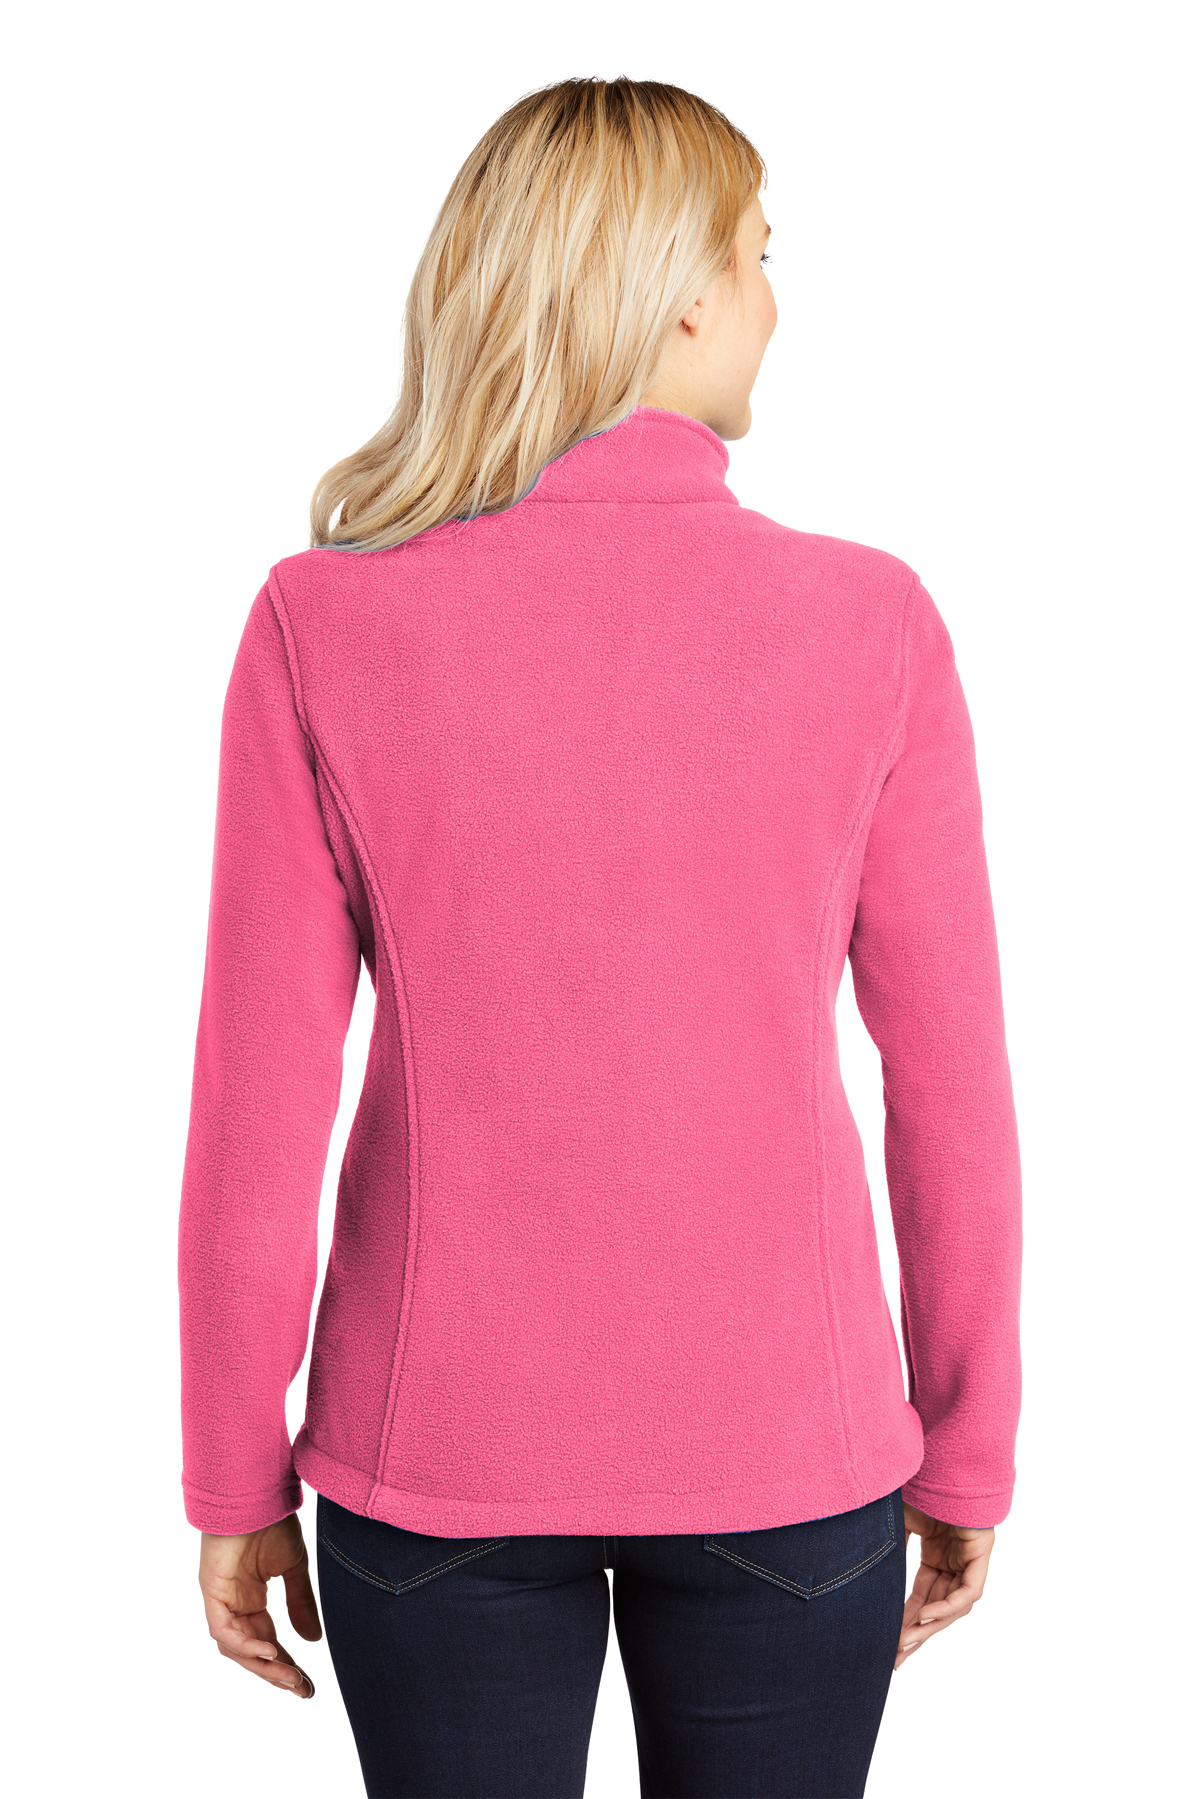 Bella Jacket in pink - size 14 - Fredas